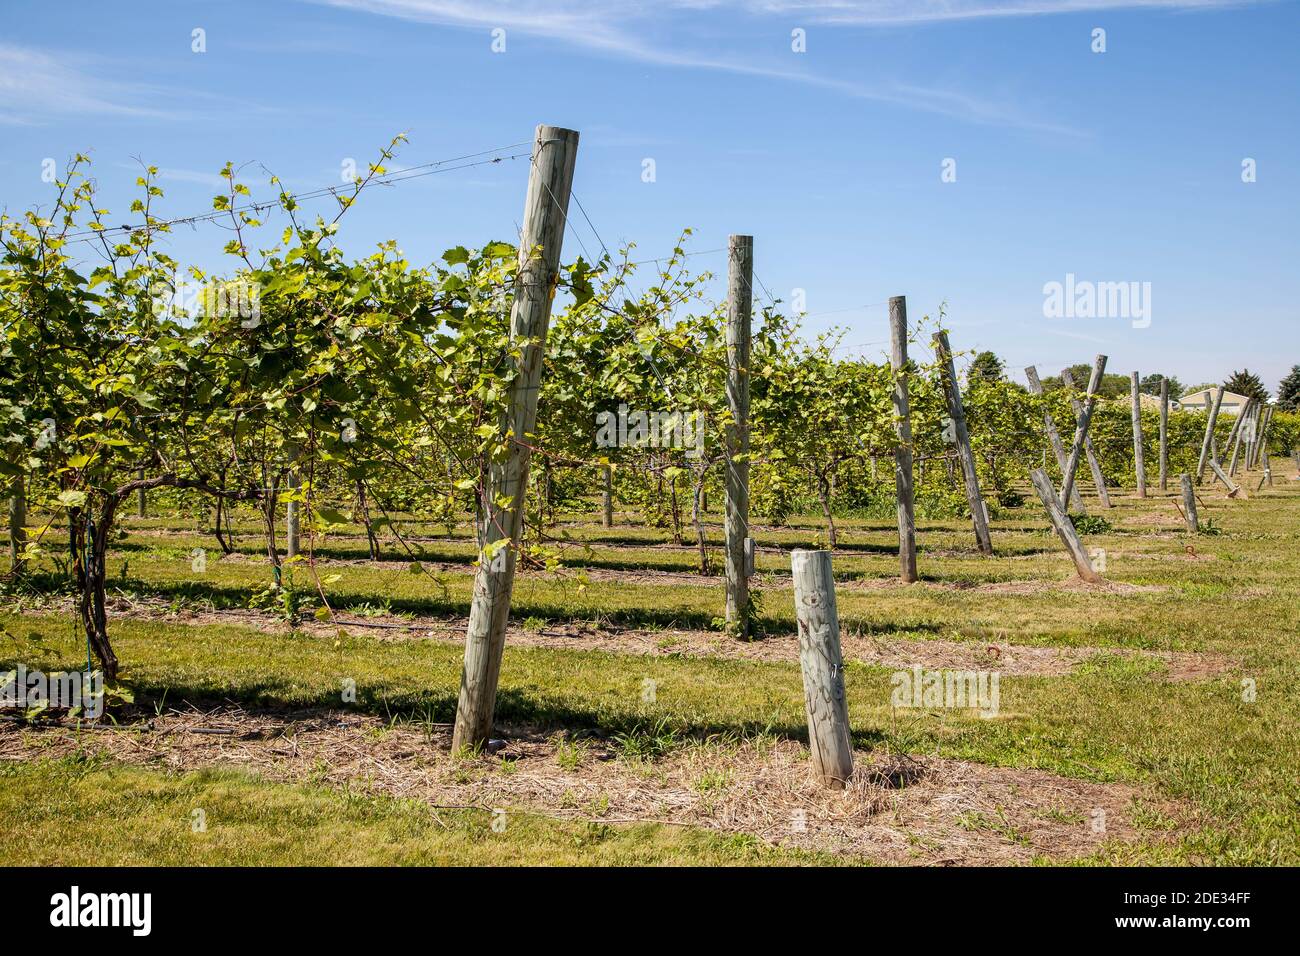 Grape vines in a vineyard in Door County Wisconsin Stock Photo